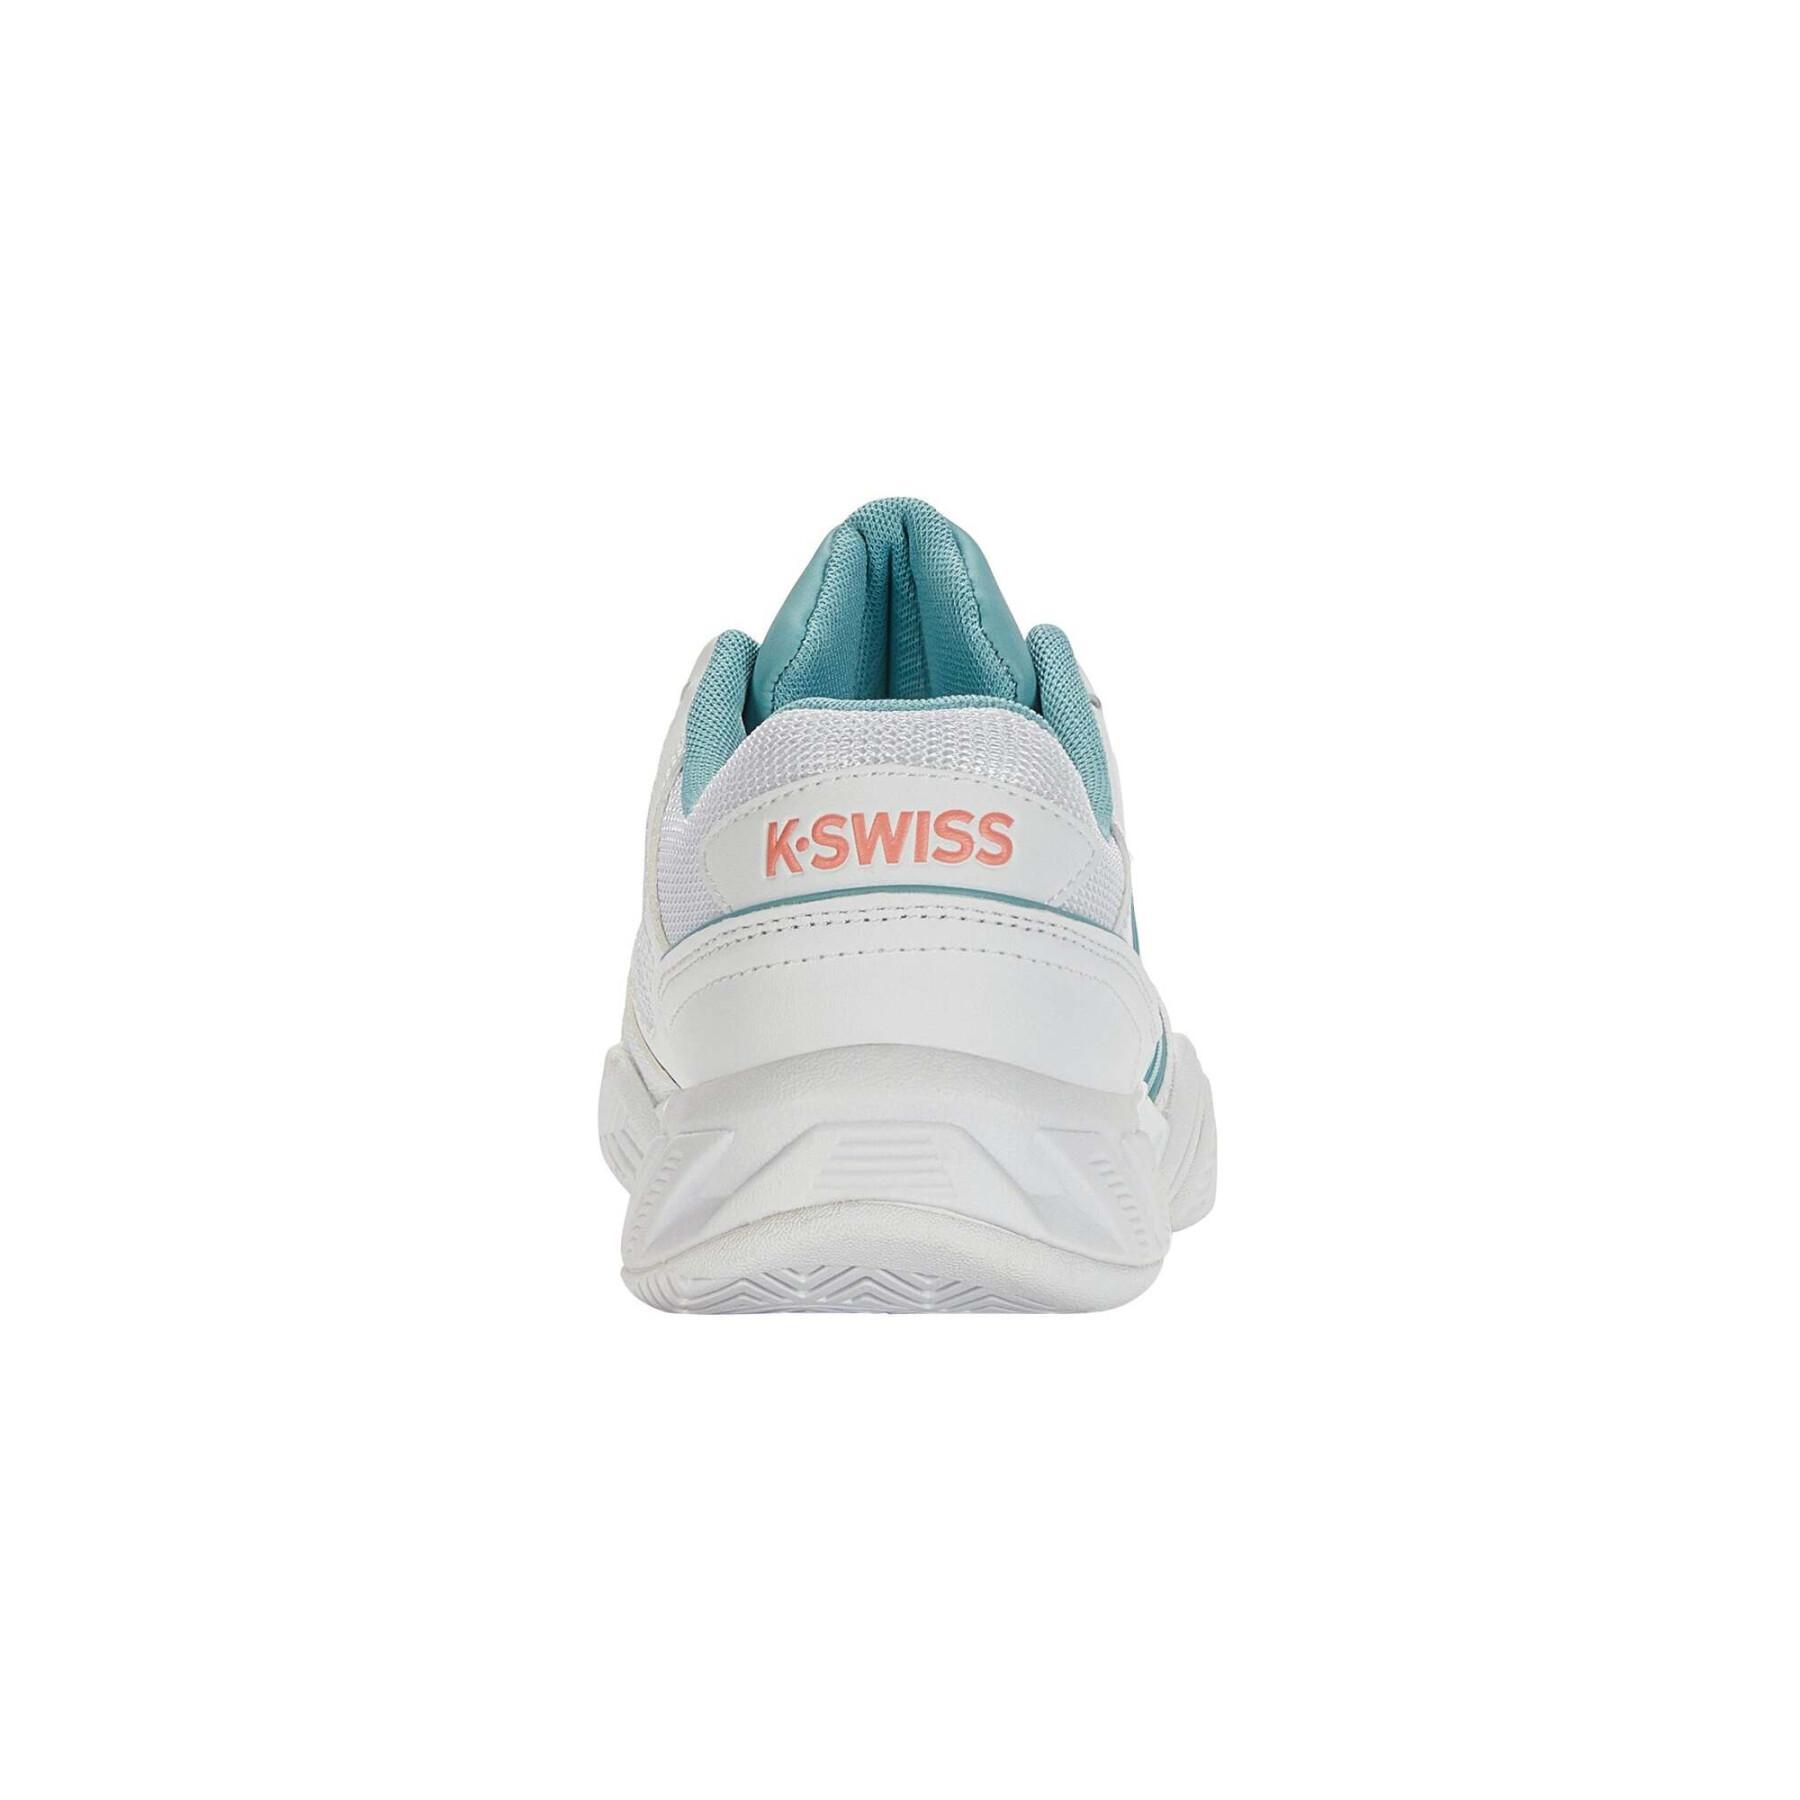 Women's tennis shoes K-Swiss Bigshot Light 4